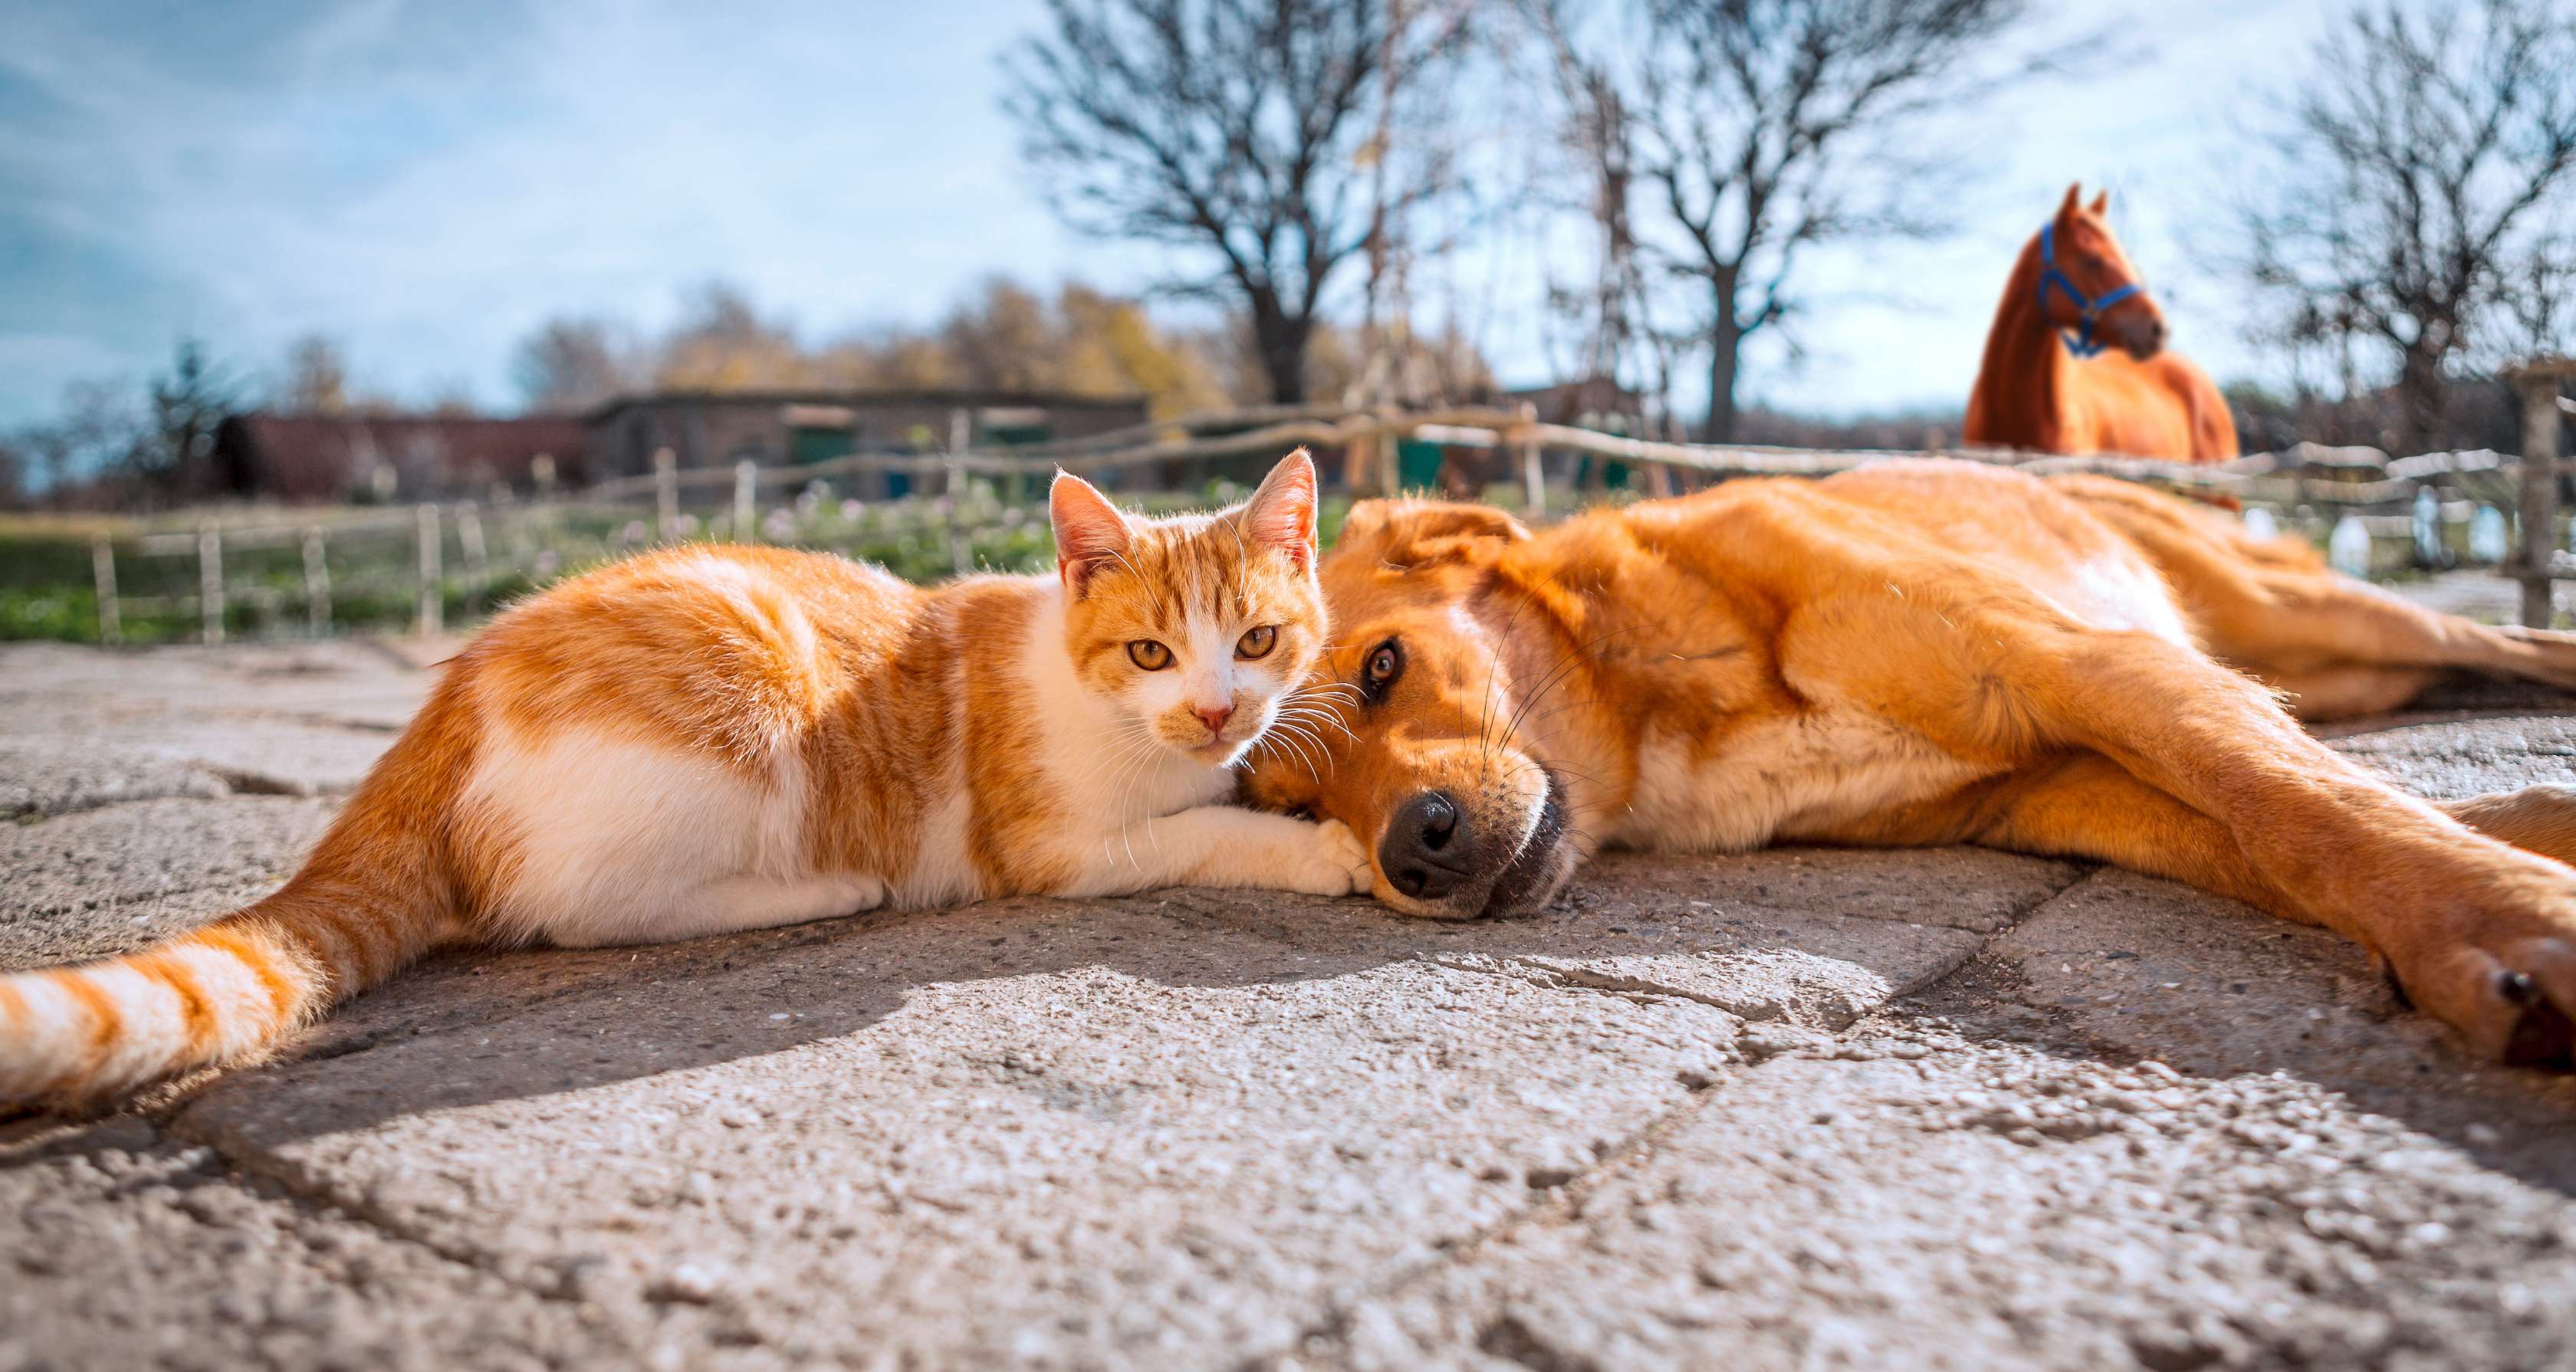 Tierkrankenversicherung: Eine Katze und ein Hund liegen zusammen auf dem Boden